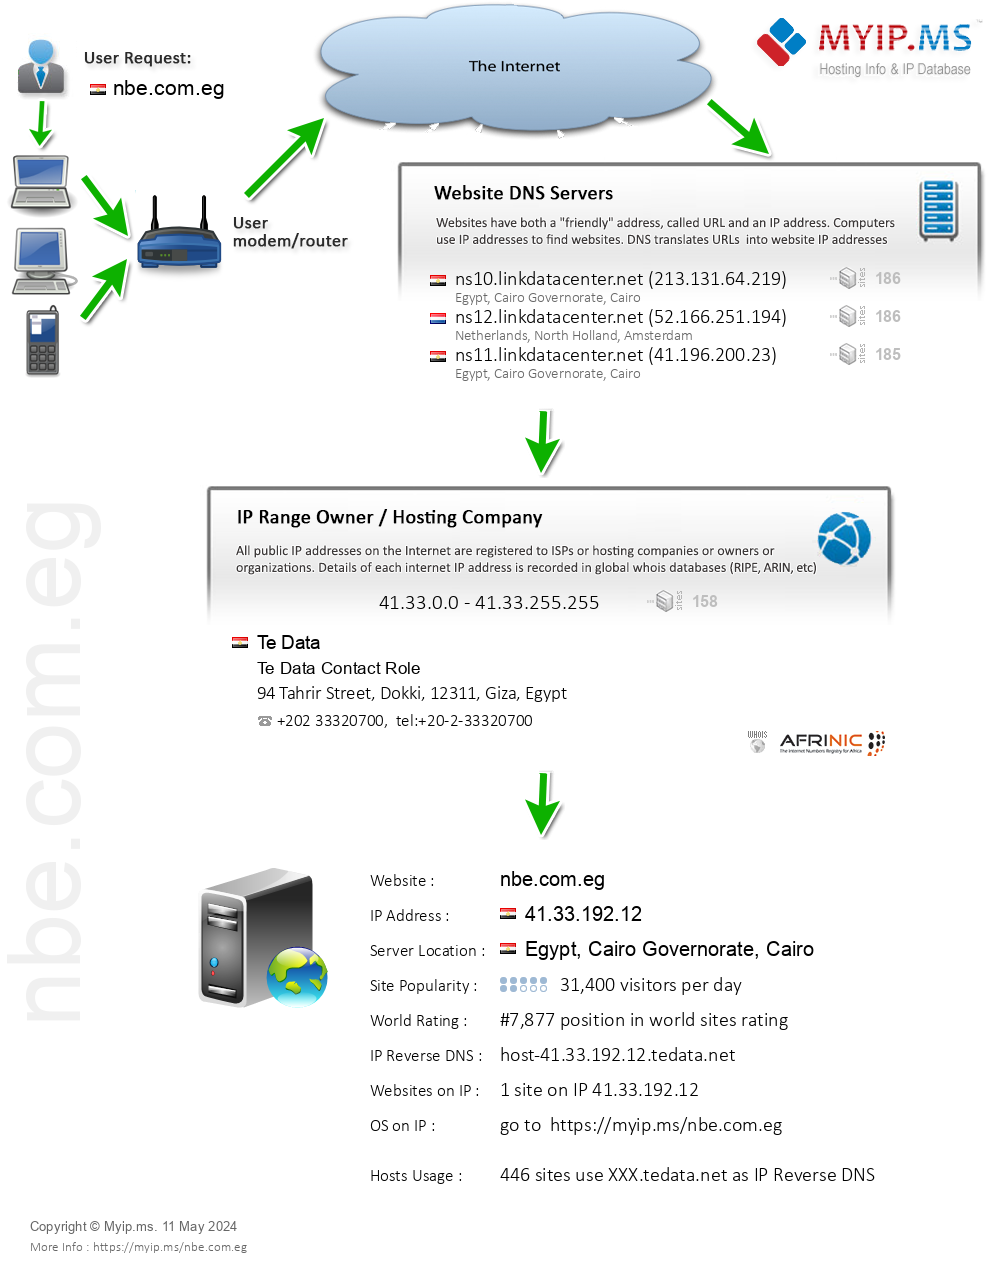 Nbe.com.eg - Website Hosting Visual IP Diagram